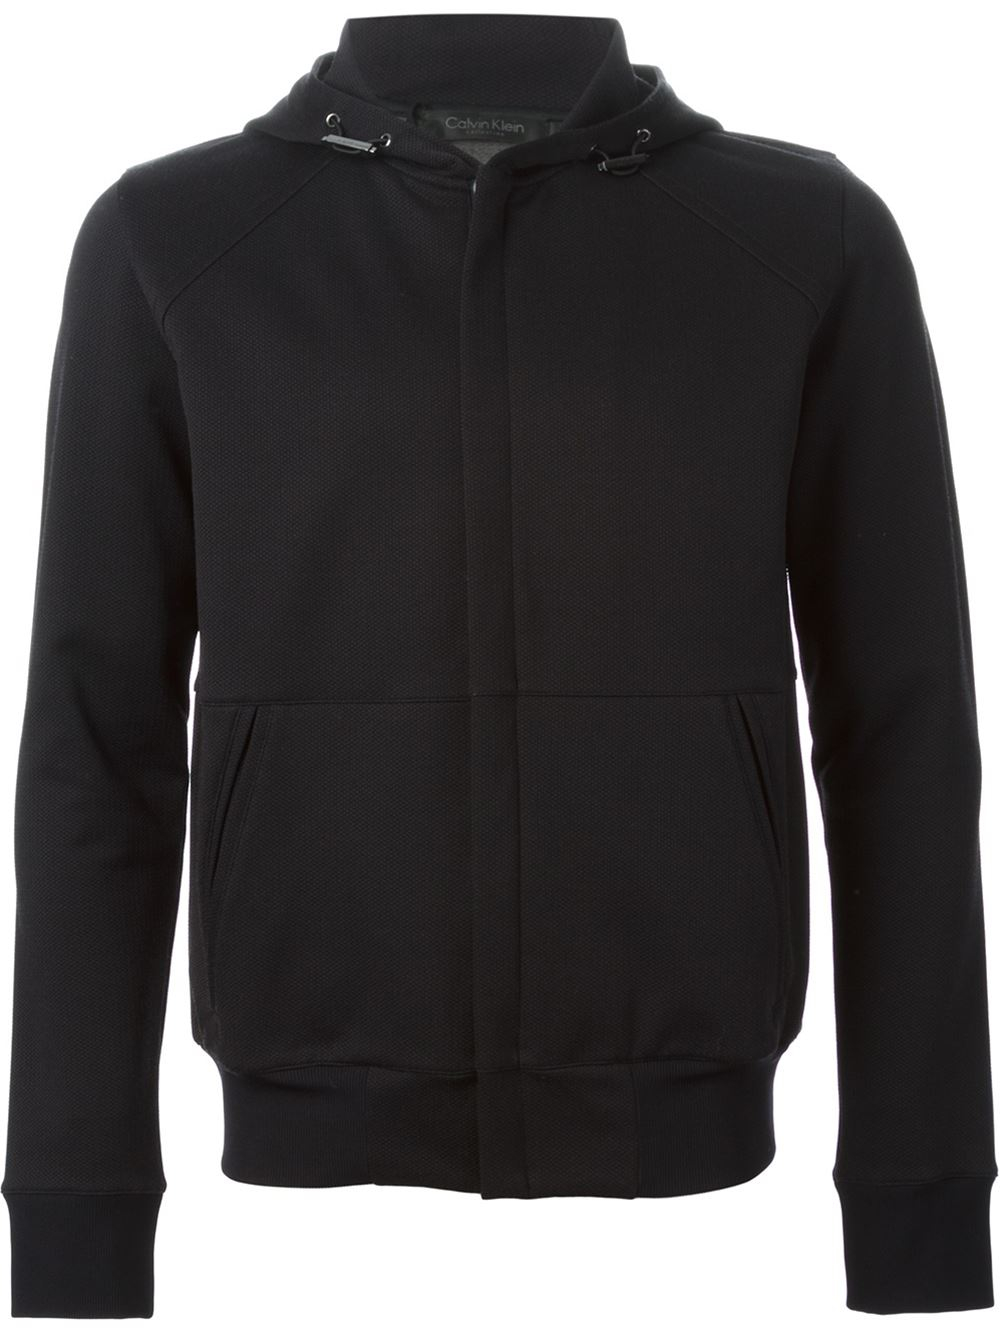 Lyst - Calvin Klein Zip Hoodie in Black for Men